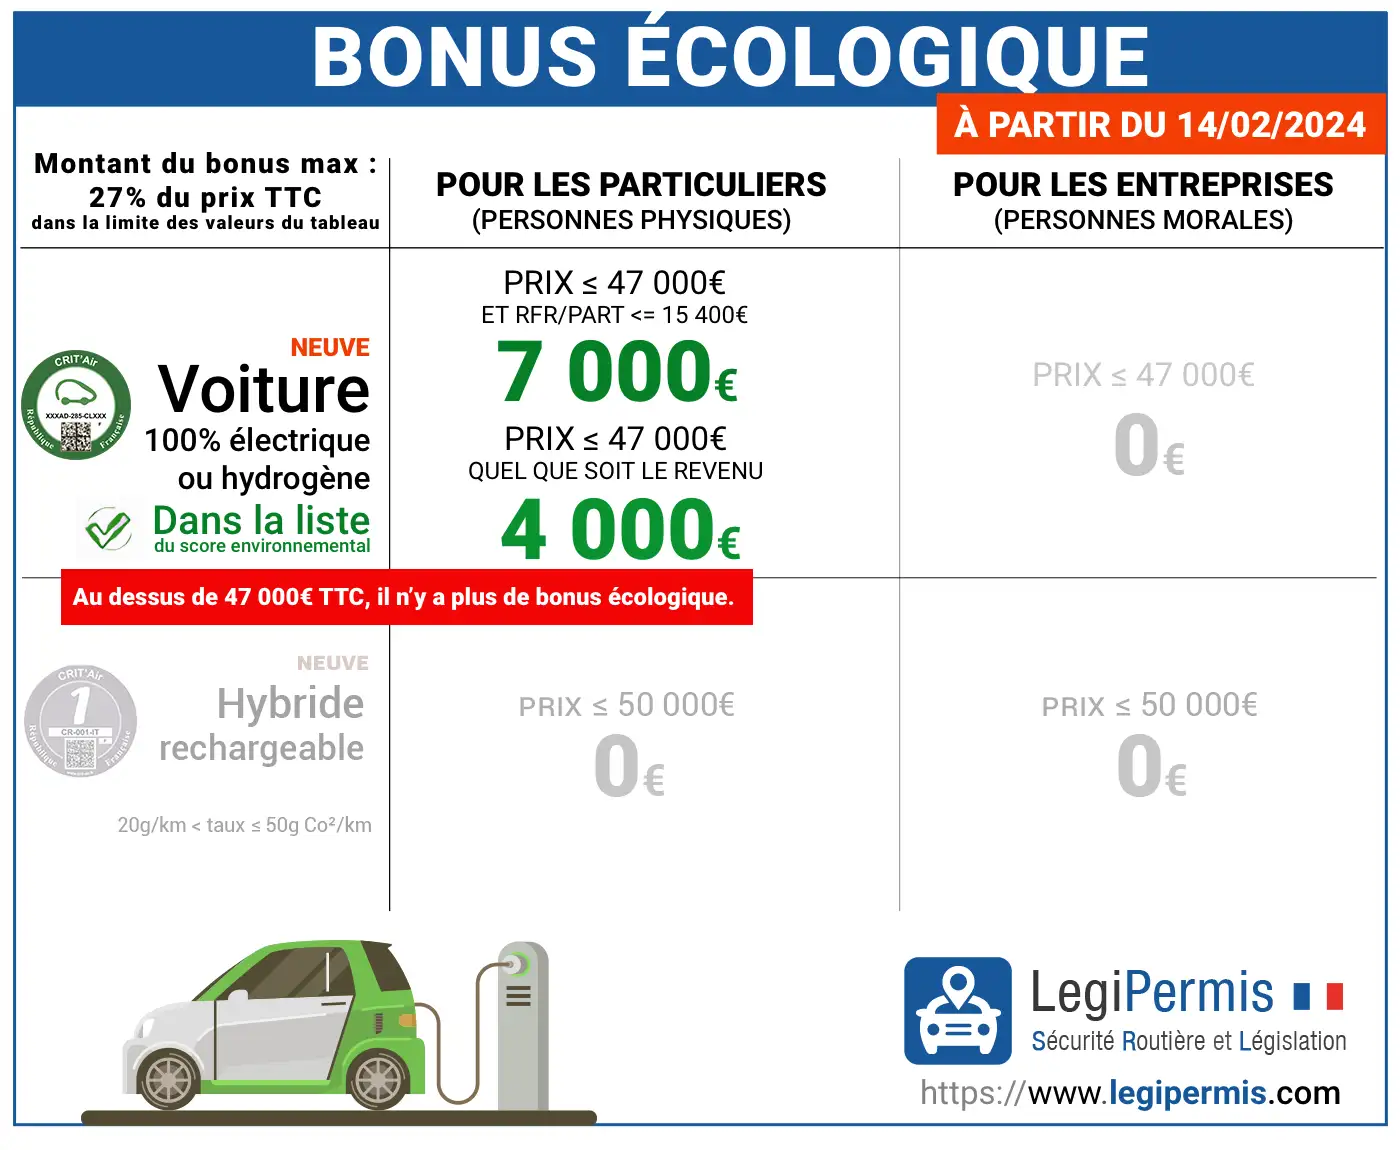 Bonus écologique : montants et conditions à partir du 14 février 2024